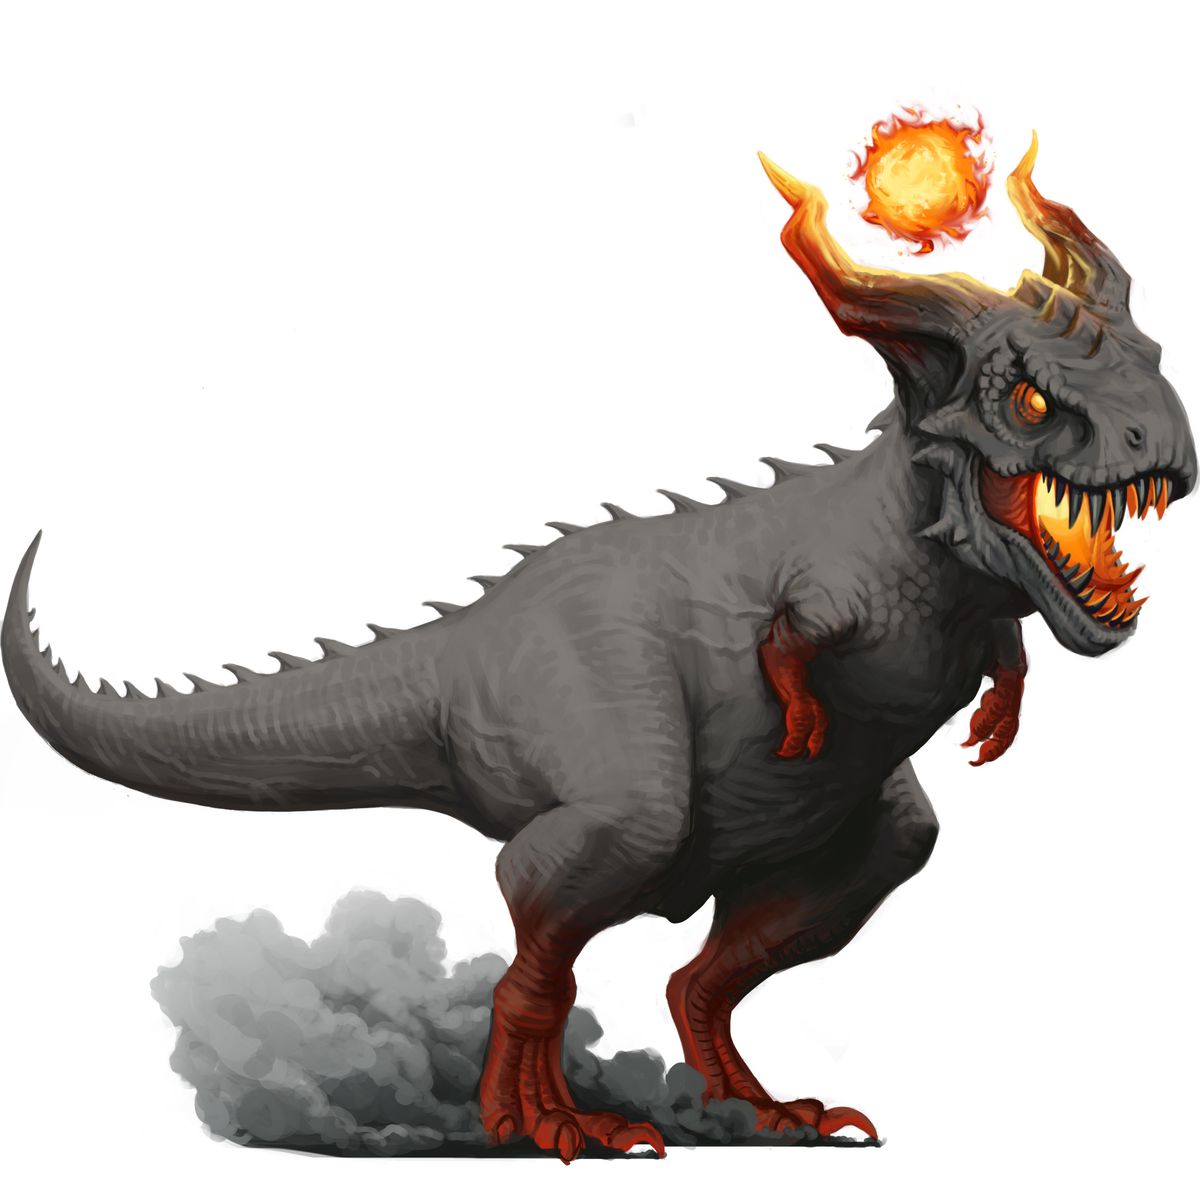 Kabaca bir t-rex'e benzeyen ancak boynuzları ve başının üzerinde bir ateş topu bulunan büyük gri bir dinozor.